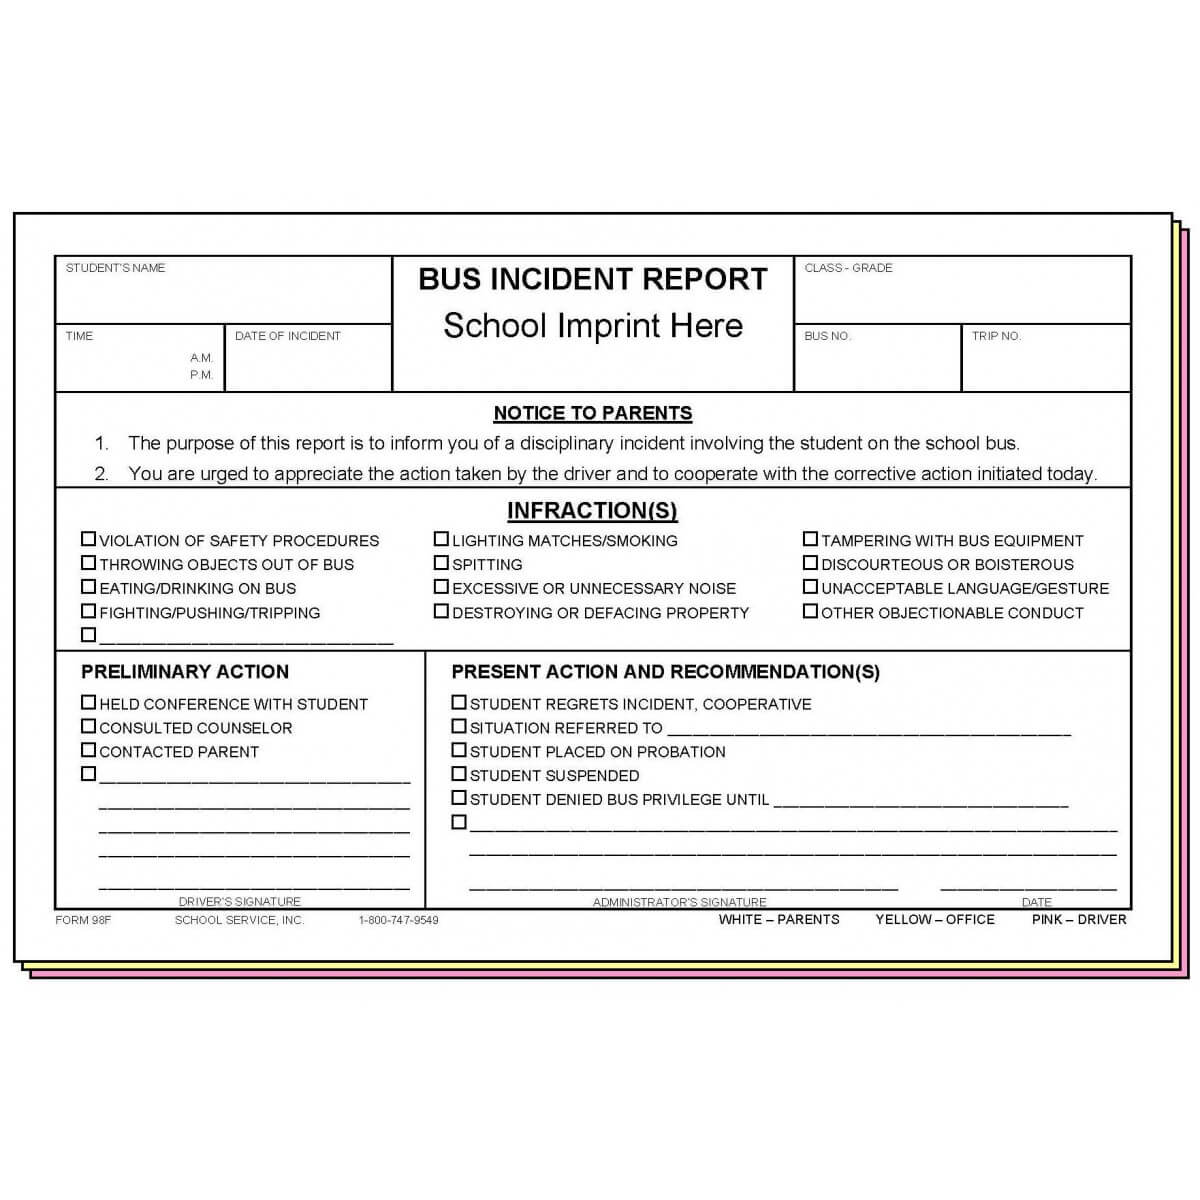 98F – Bus Incident Report W/school Imprint For School Incident Report Template